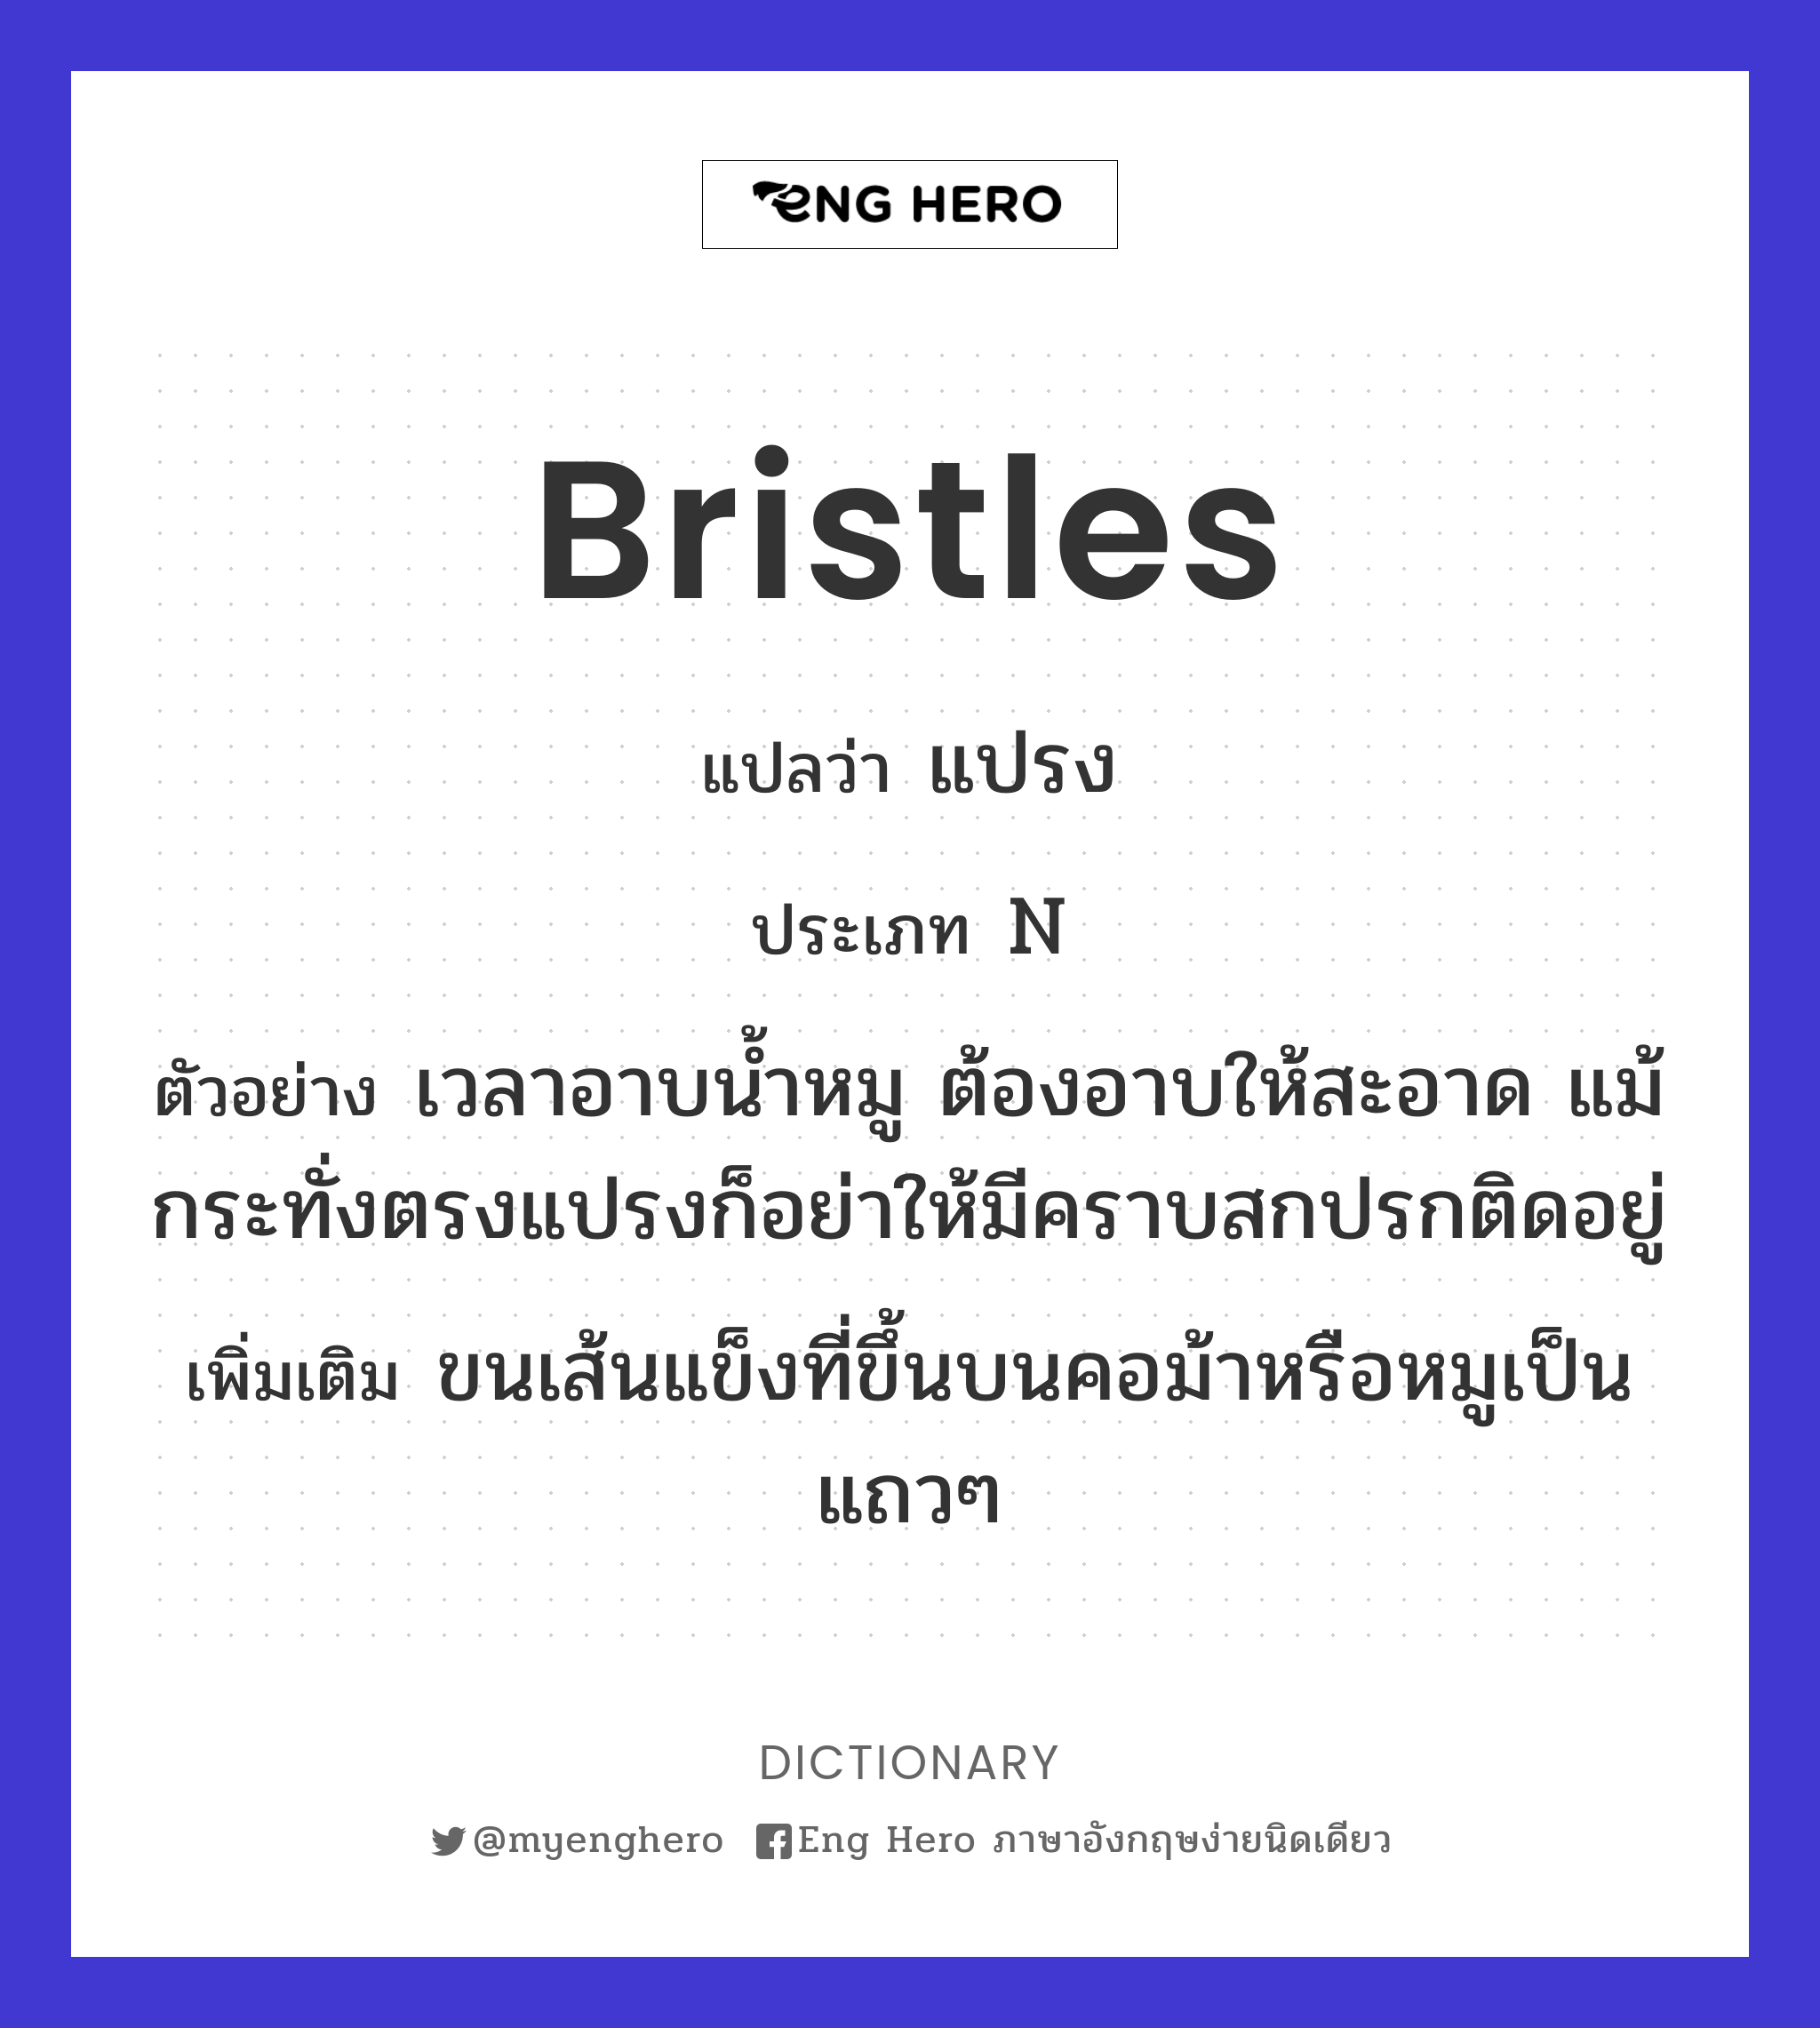 bristles